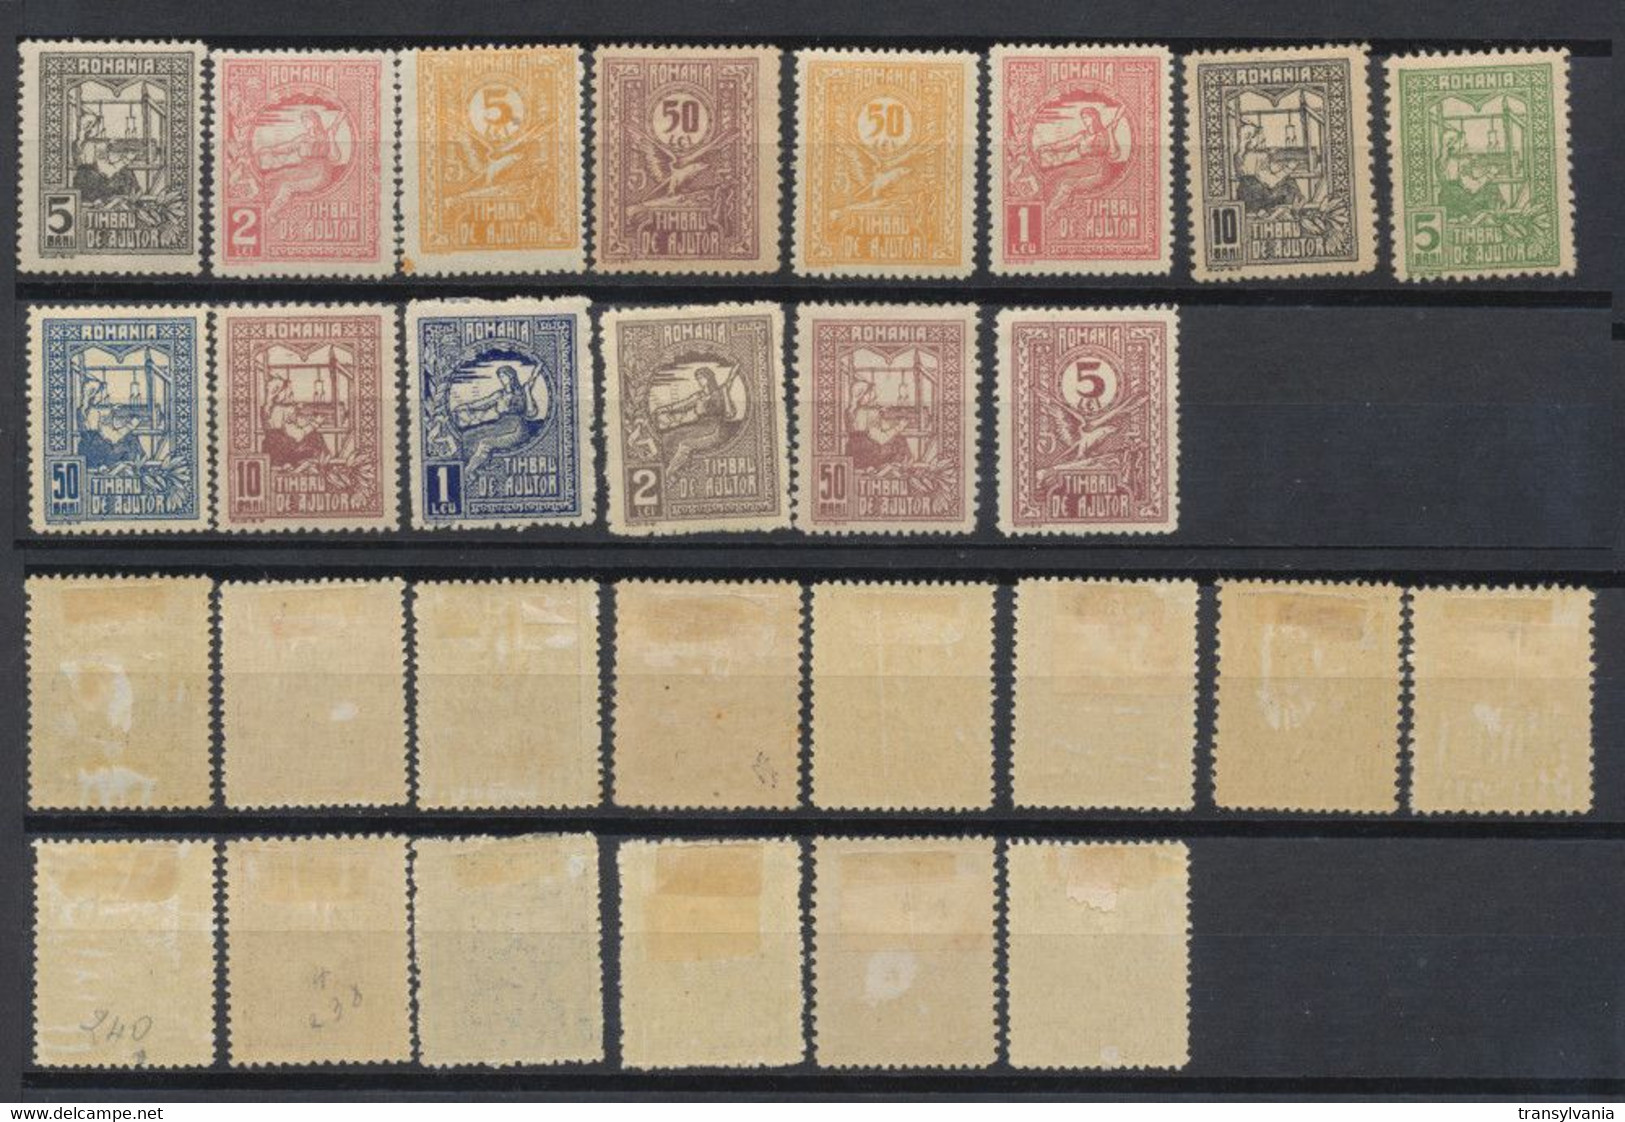 Romania 1916-1918 Rare Set Of 14 Relief Aid Stamps MLH, Only 200 Complete Sets Issued - Variétés Et Curiosités